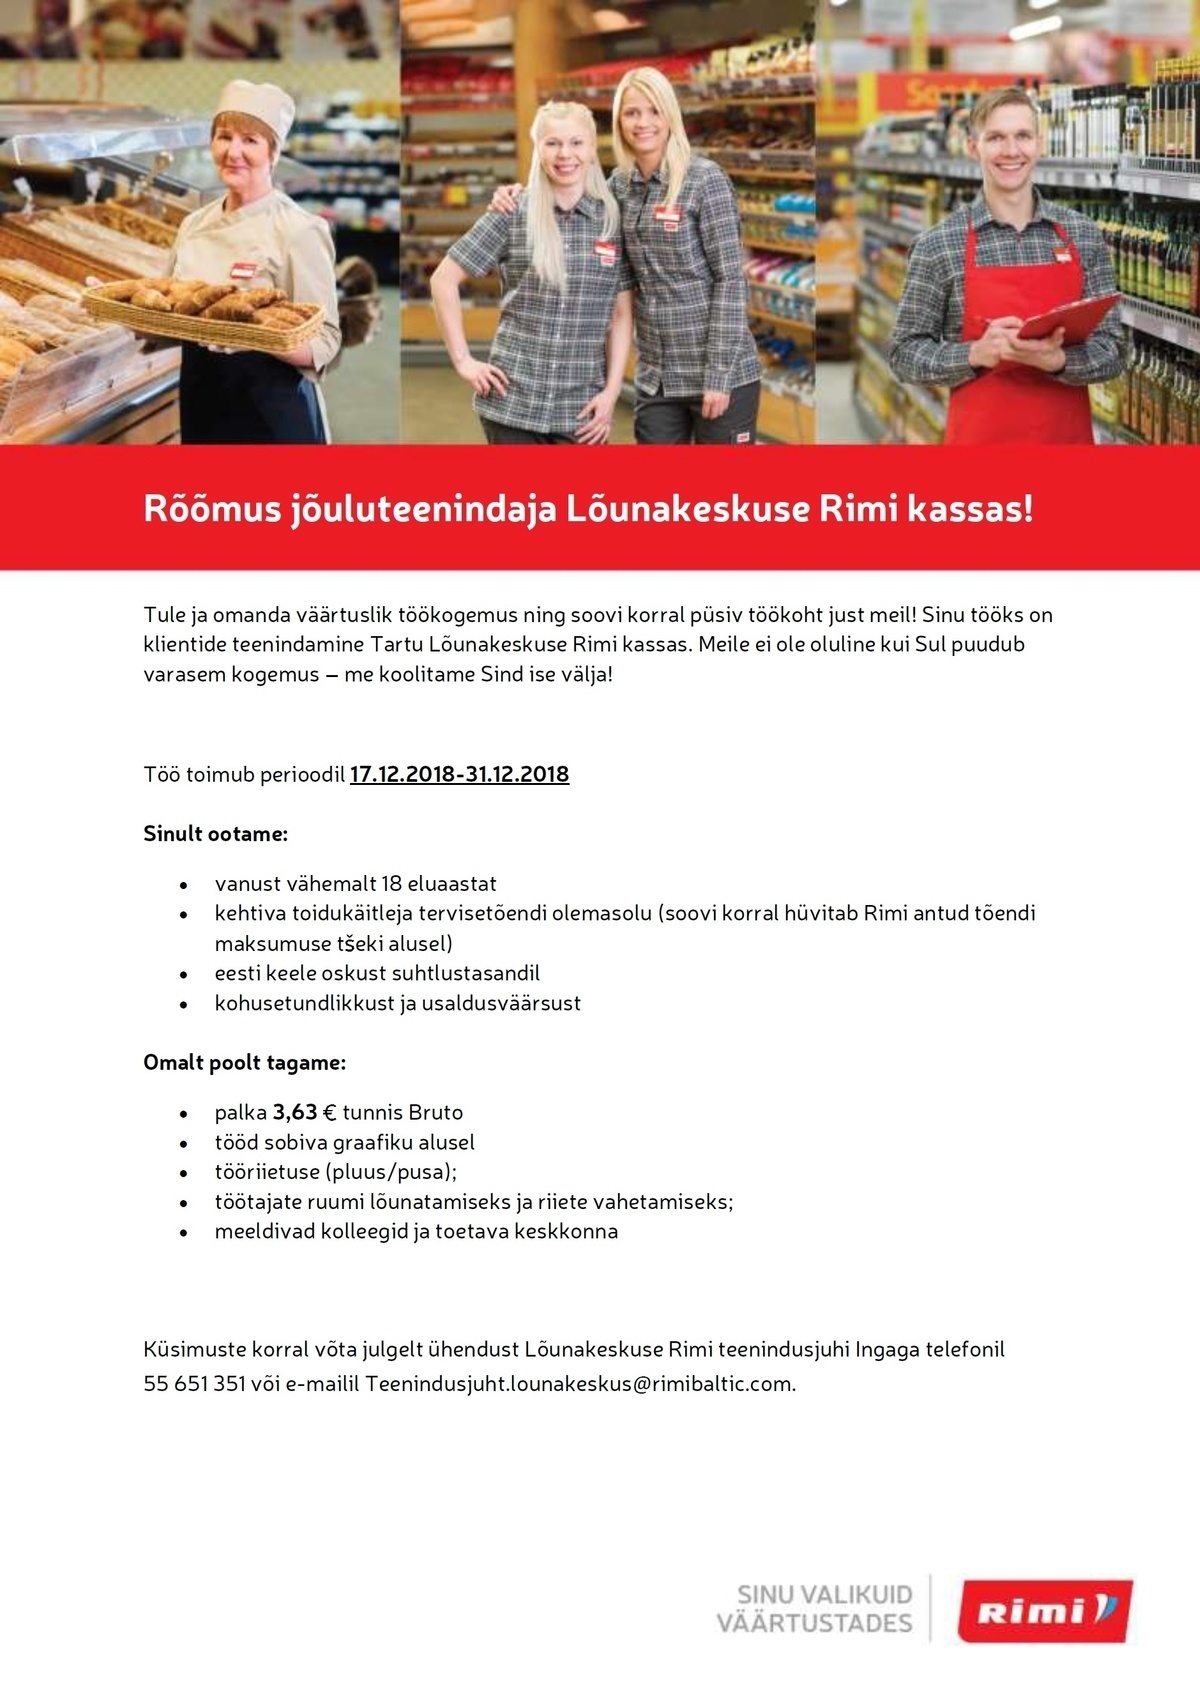 Rimi Eesti Food AS Jõuluteenindaja Lõunakeskuse Rimis!